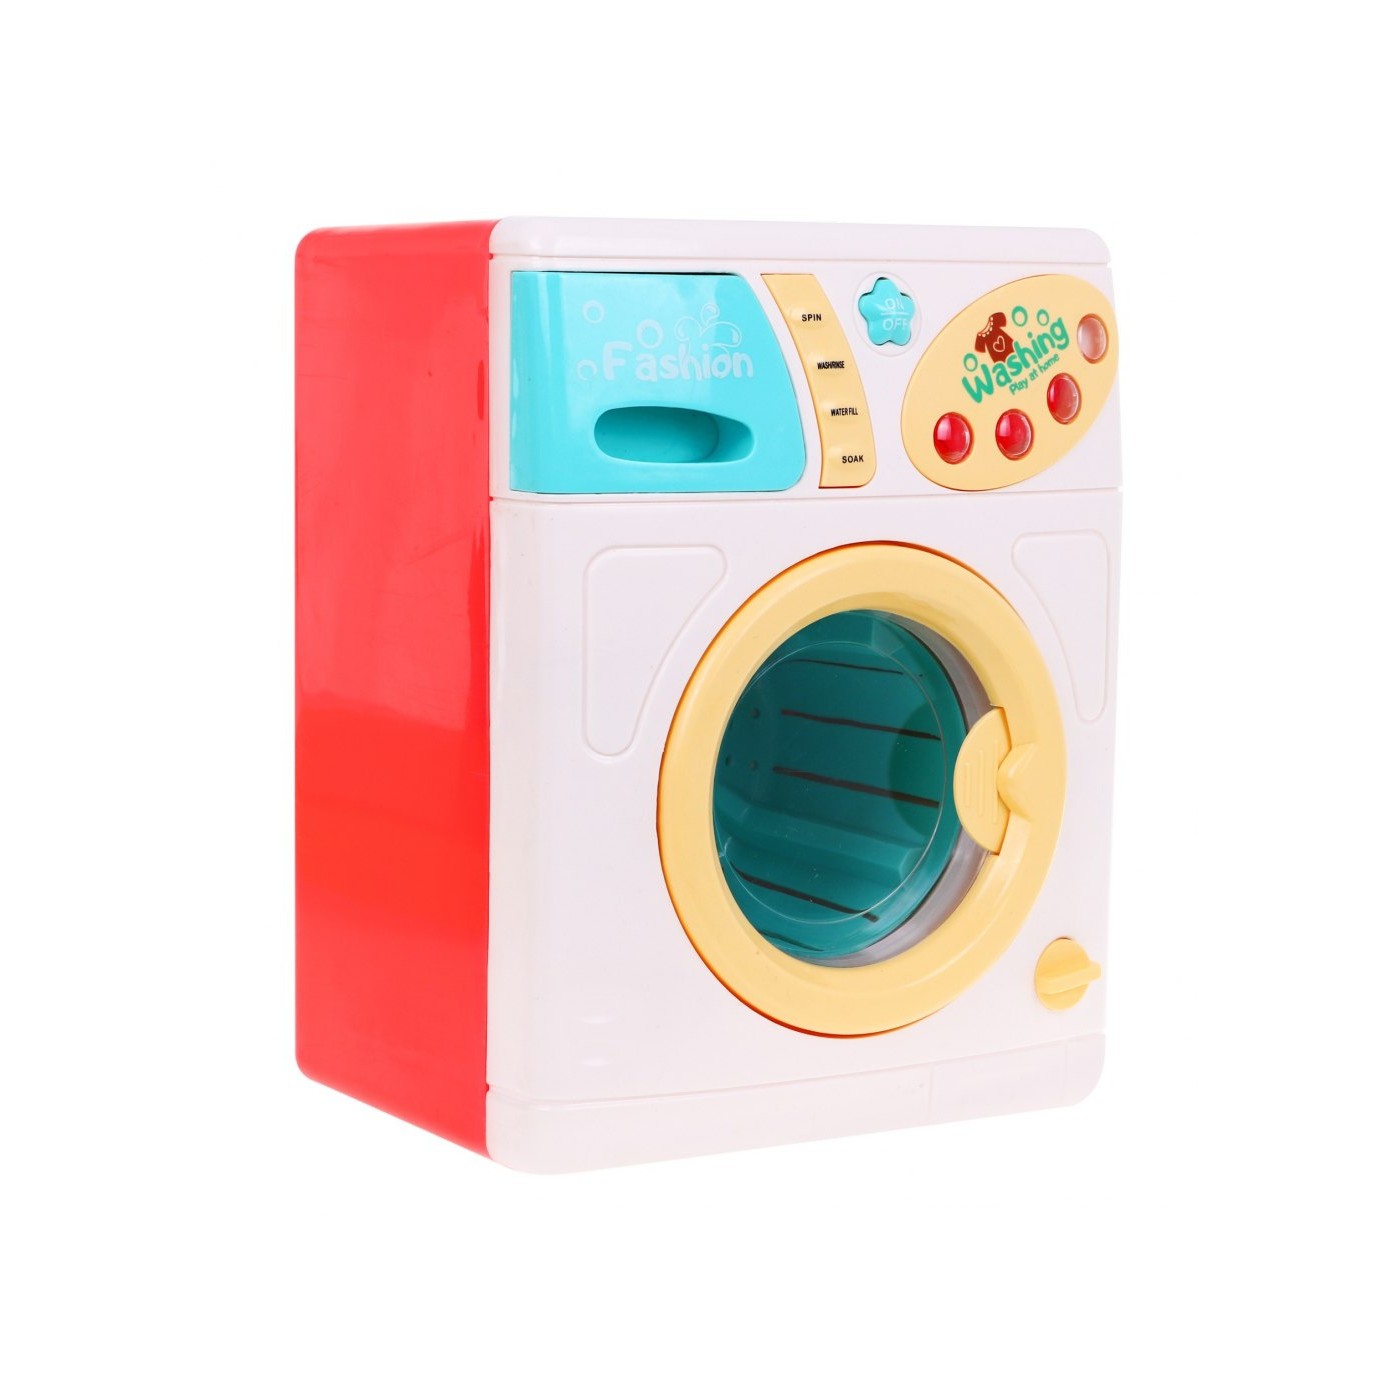 Kolorowa Pralka dla dzieci 3+ Funkcja prania + Szufladka na wodę + Wesoła muzyka